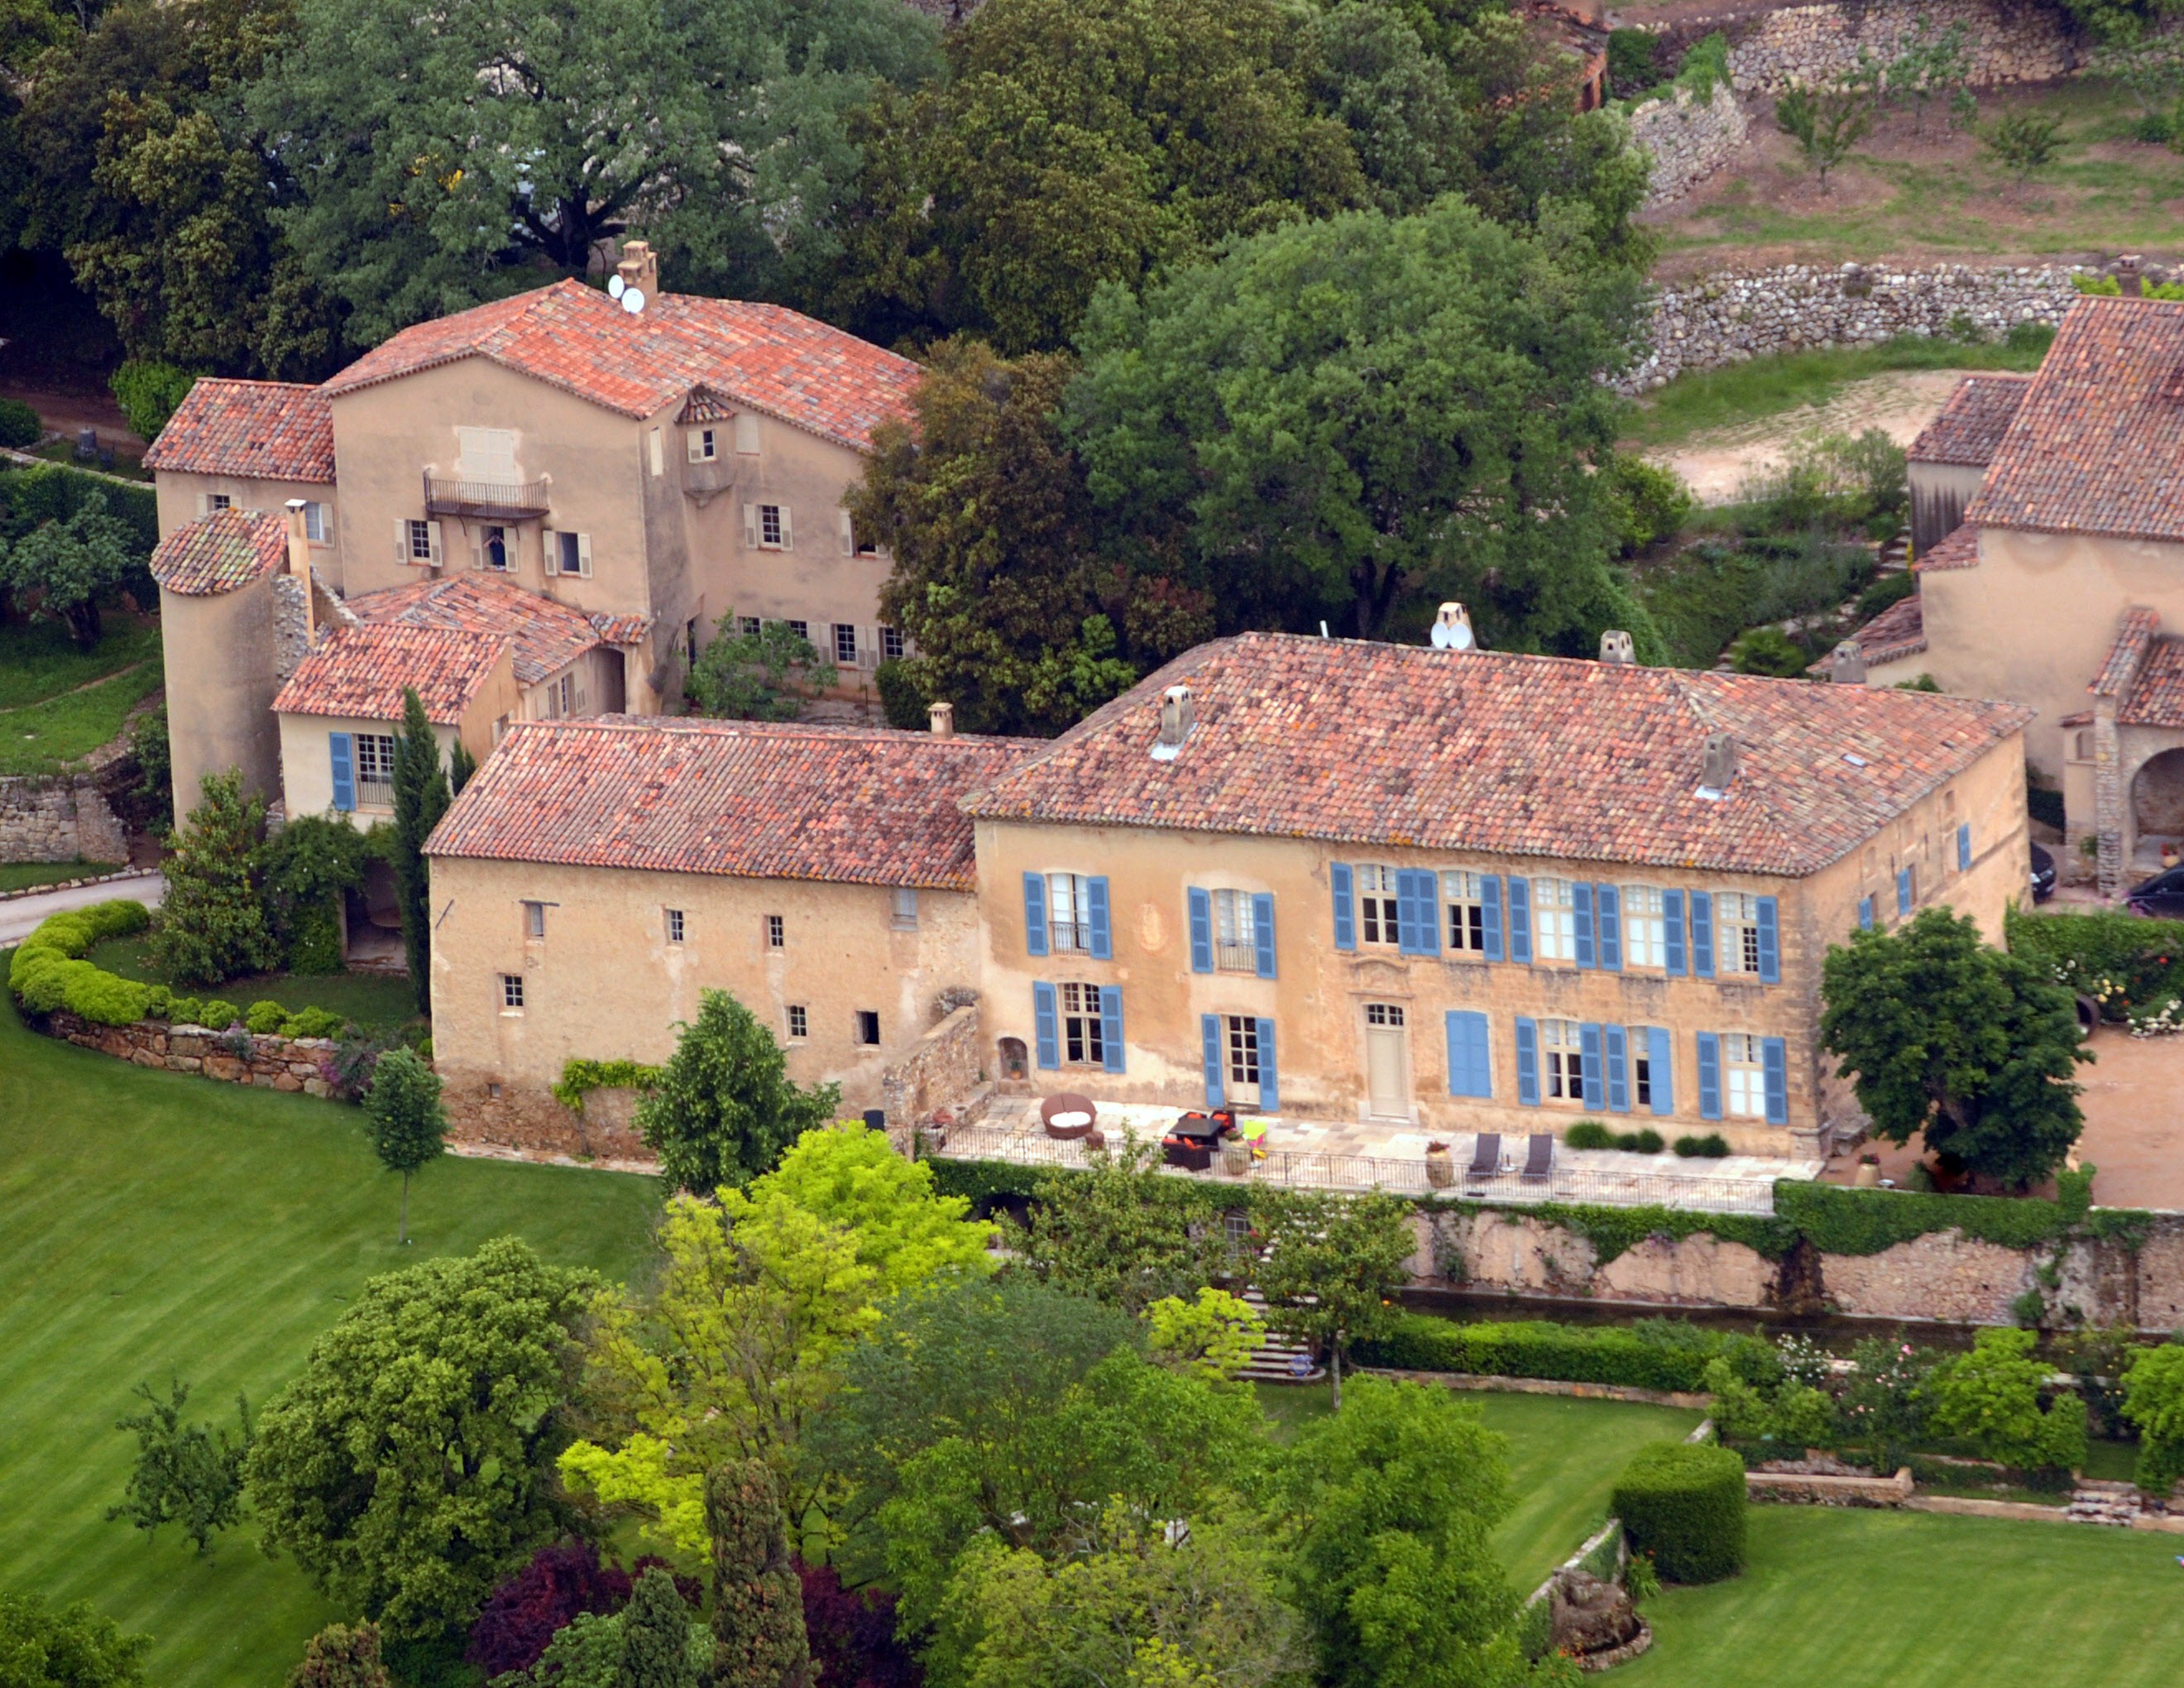 Chateau Miraval, hier auf einem Luftbild zu sehen, hat einen preisgekrönten Roséschaumwein hervorgebracht